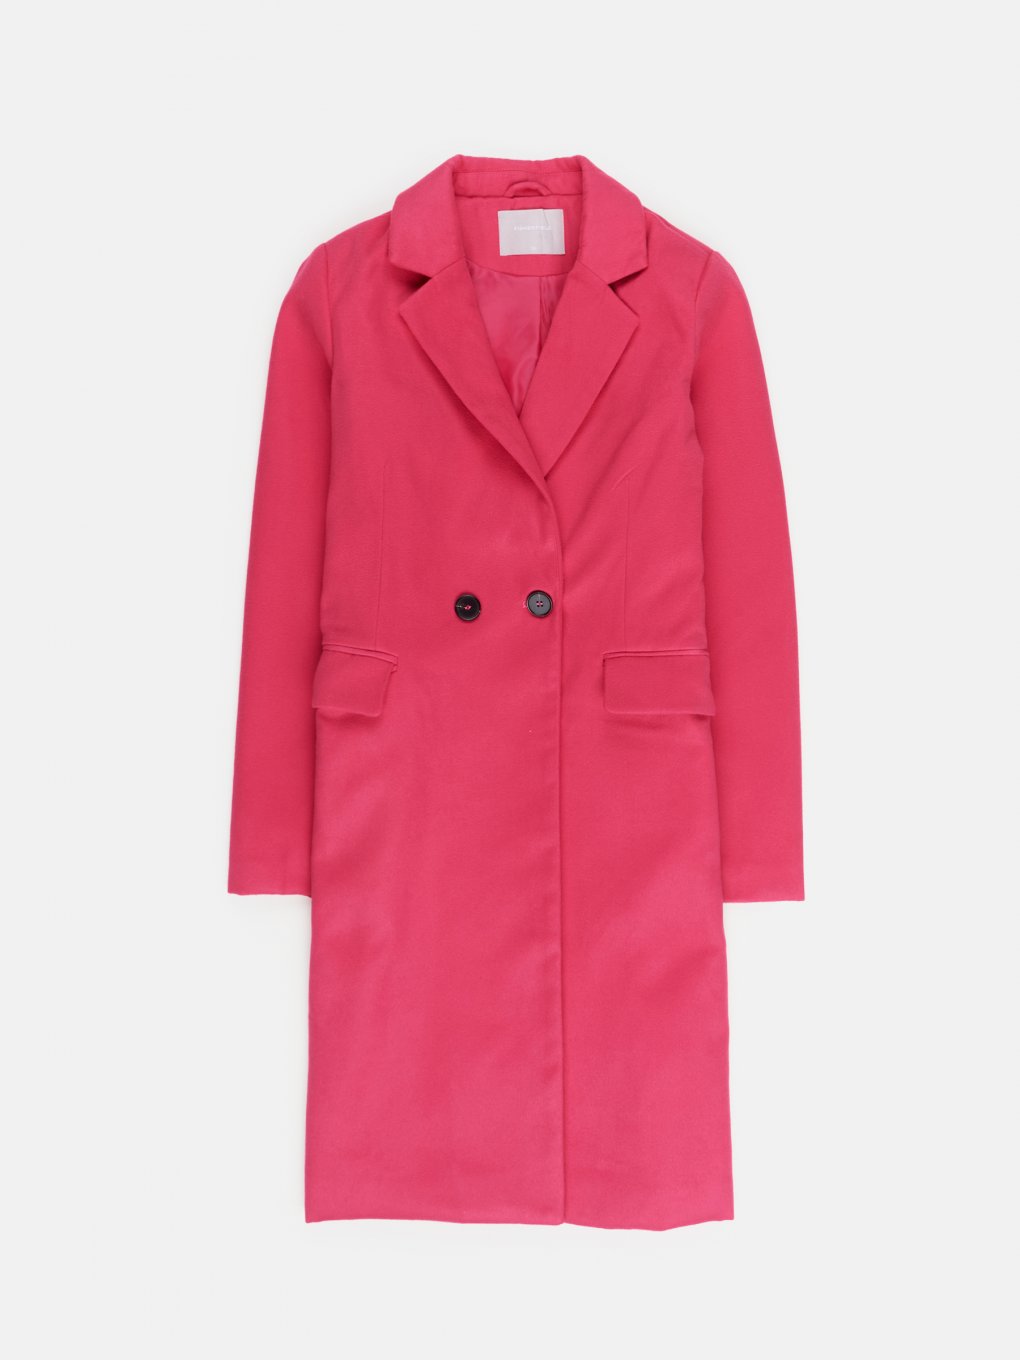 Jednobarevný kabát s kapsami dámský